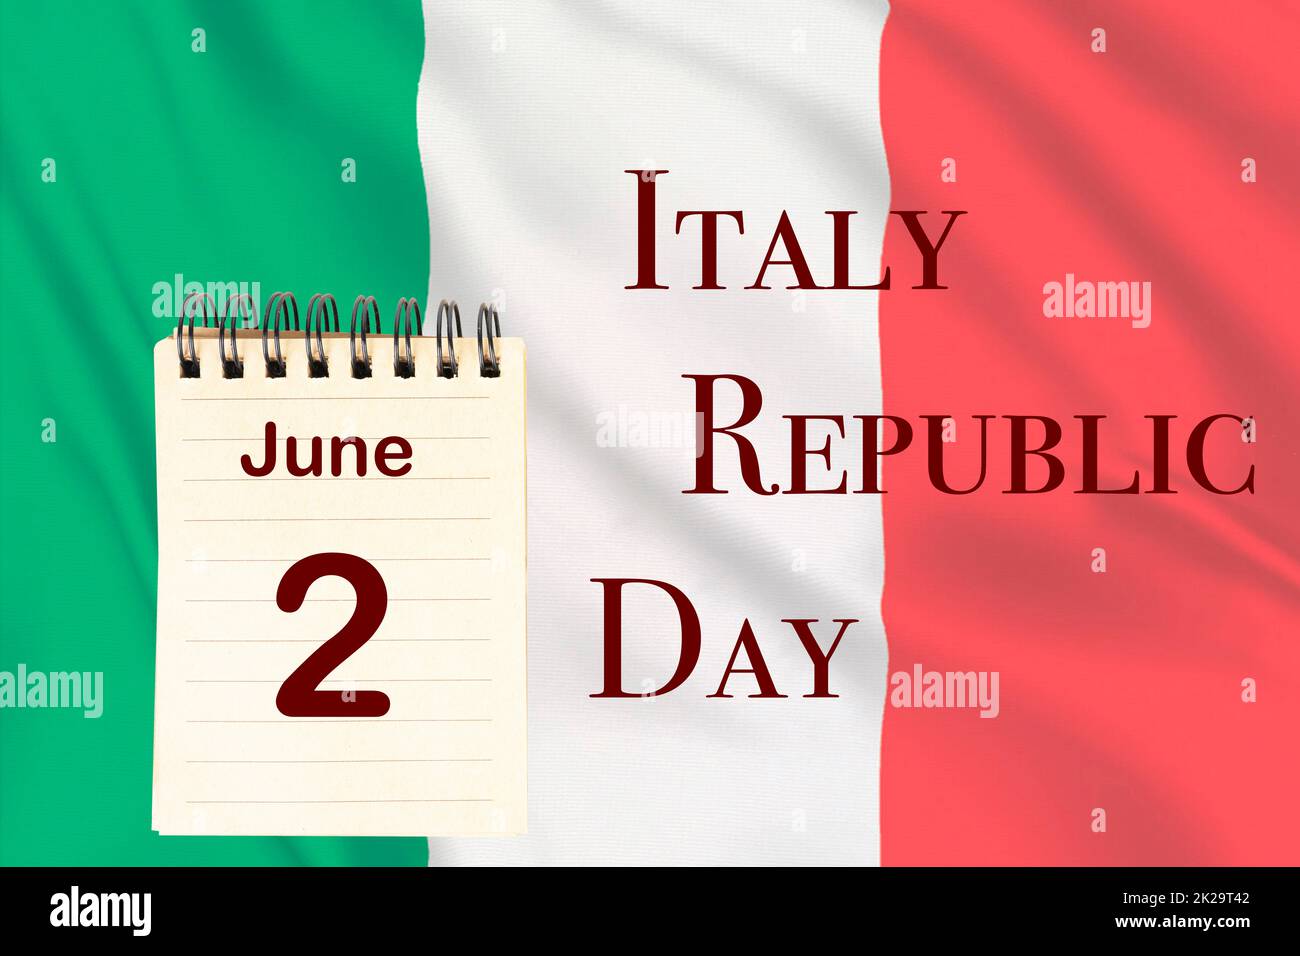 Italy Republic Day Stock Photo